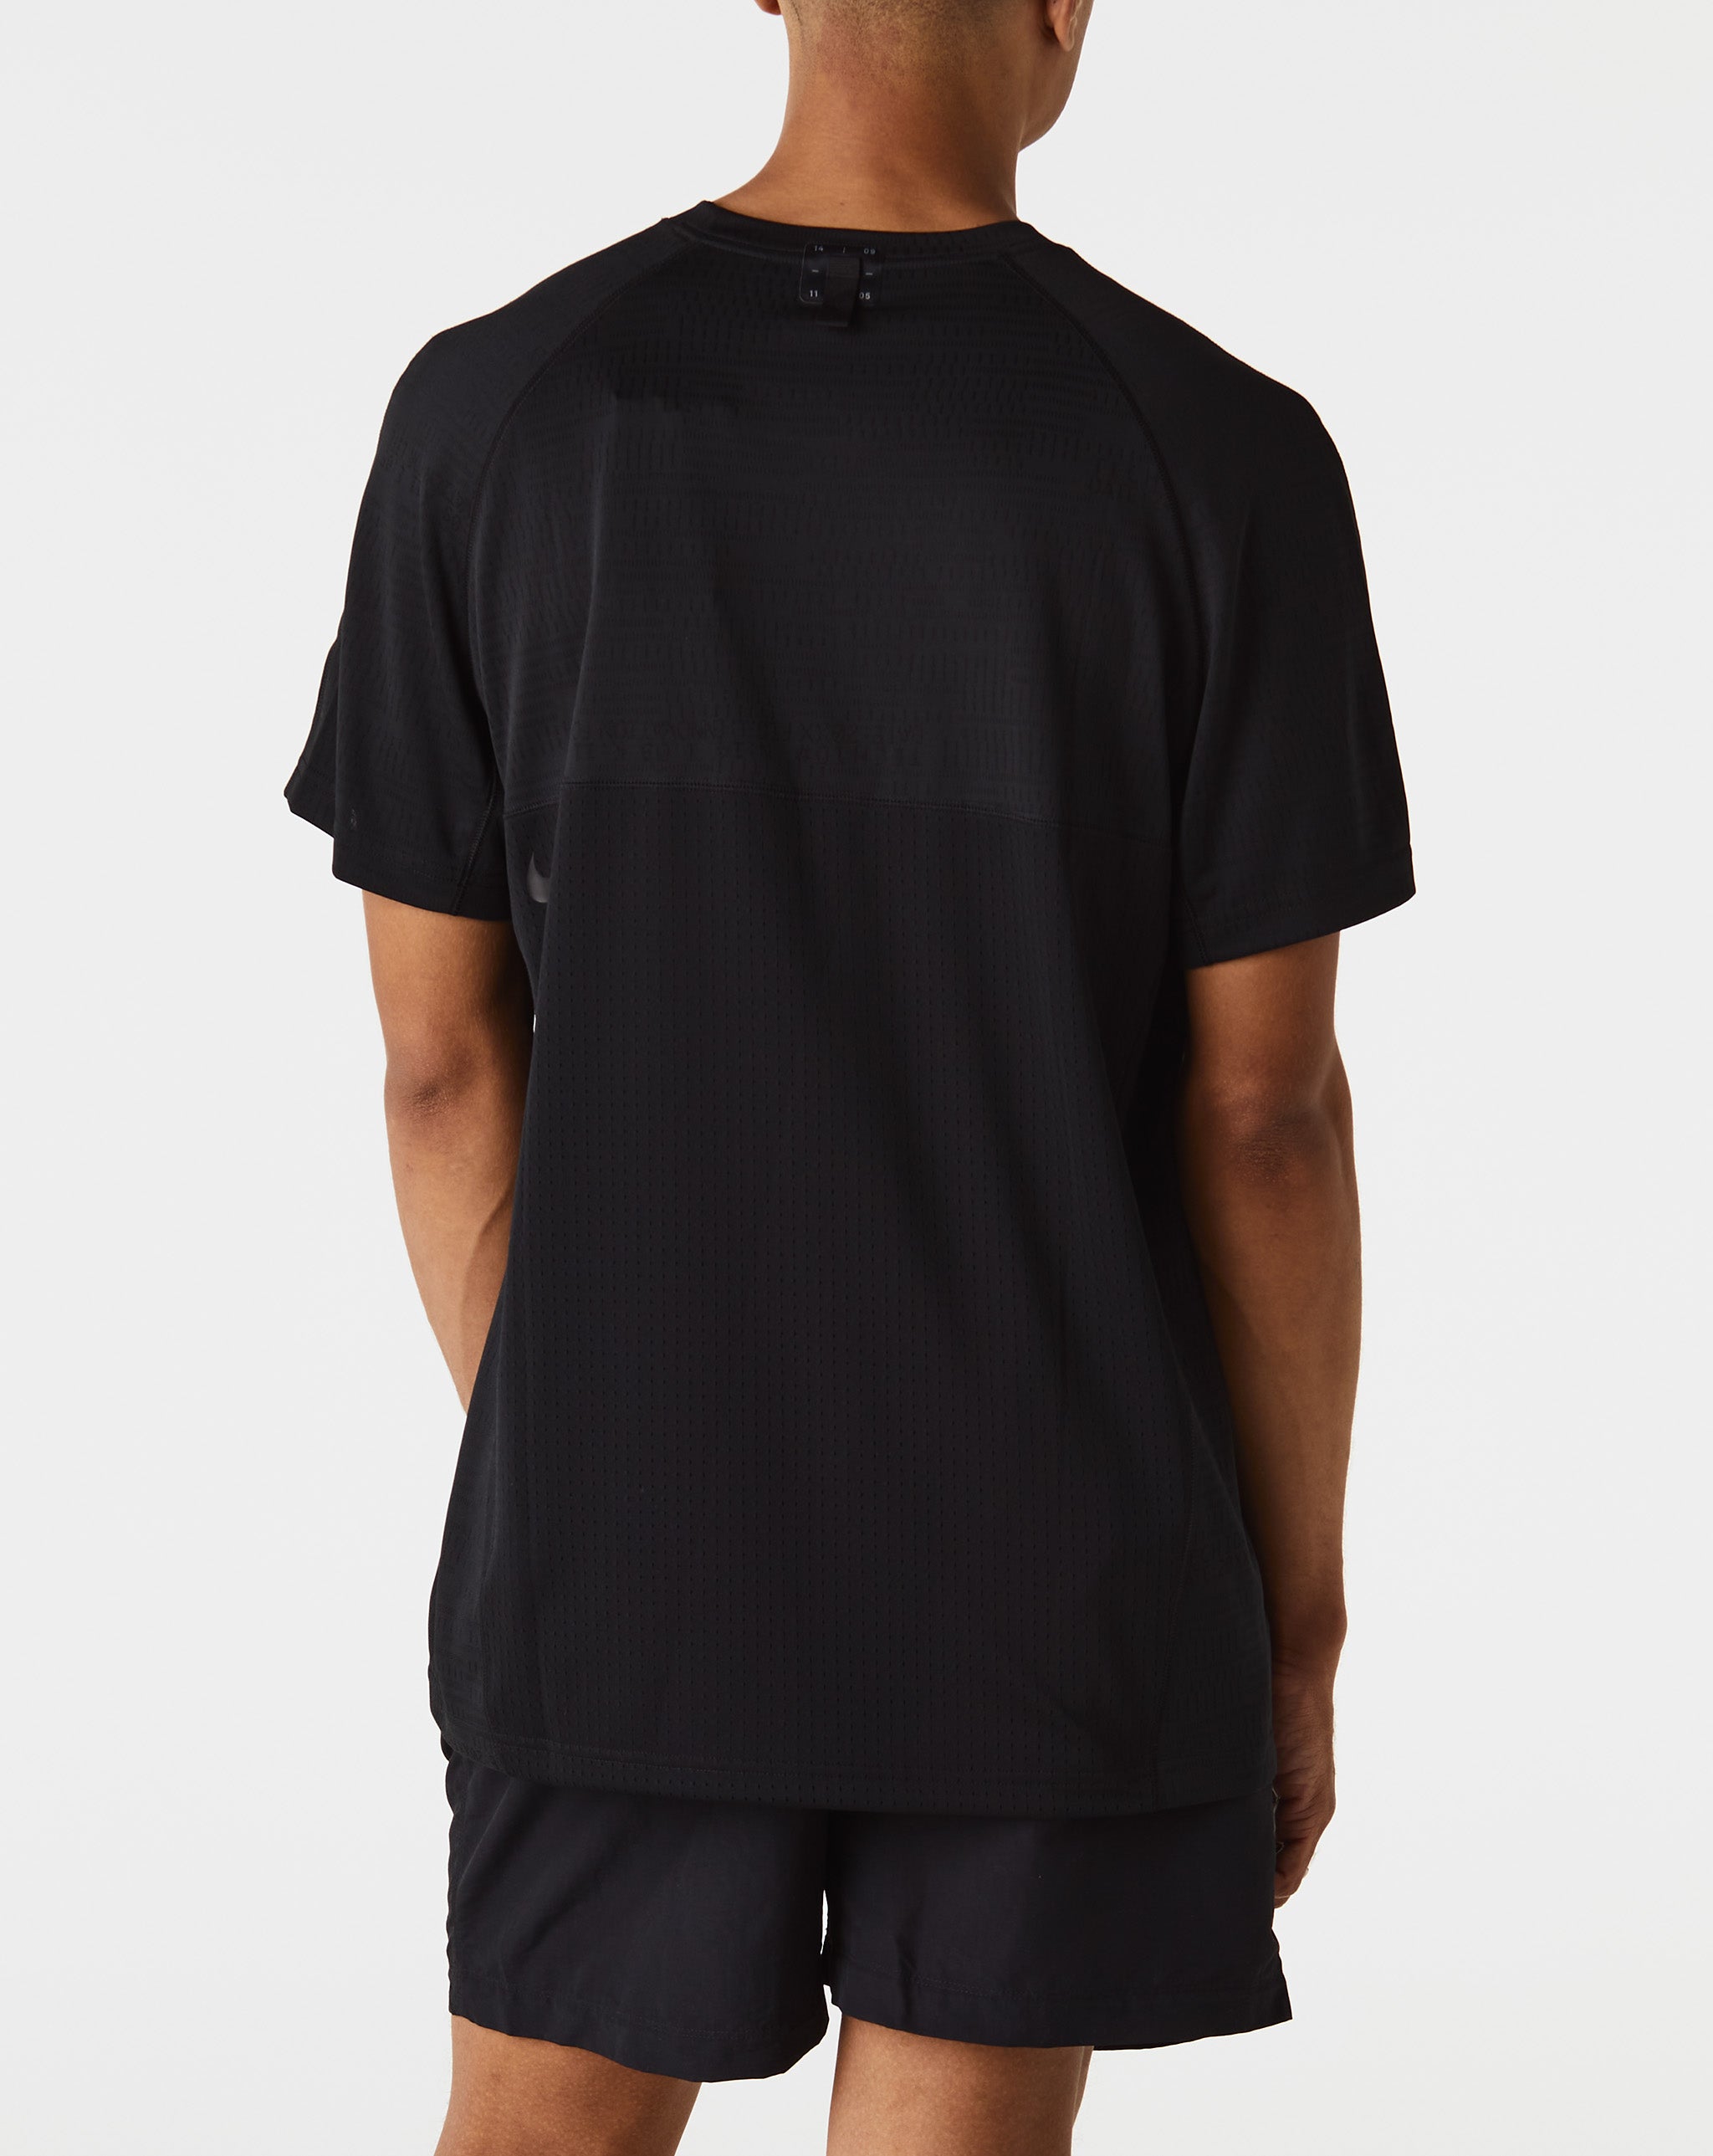 Nike Tech Pack T-Shirt  - XHIBITION